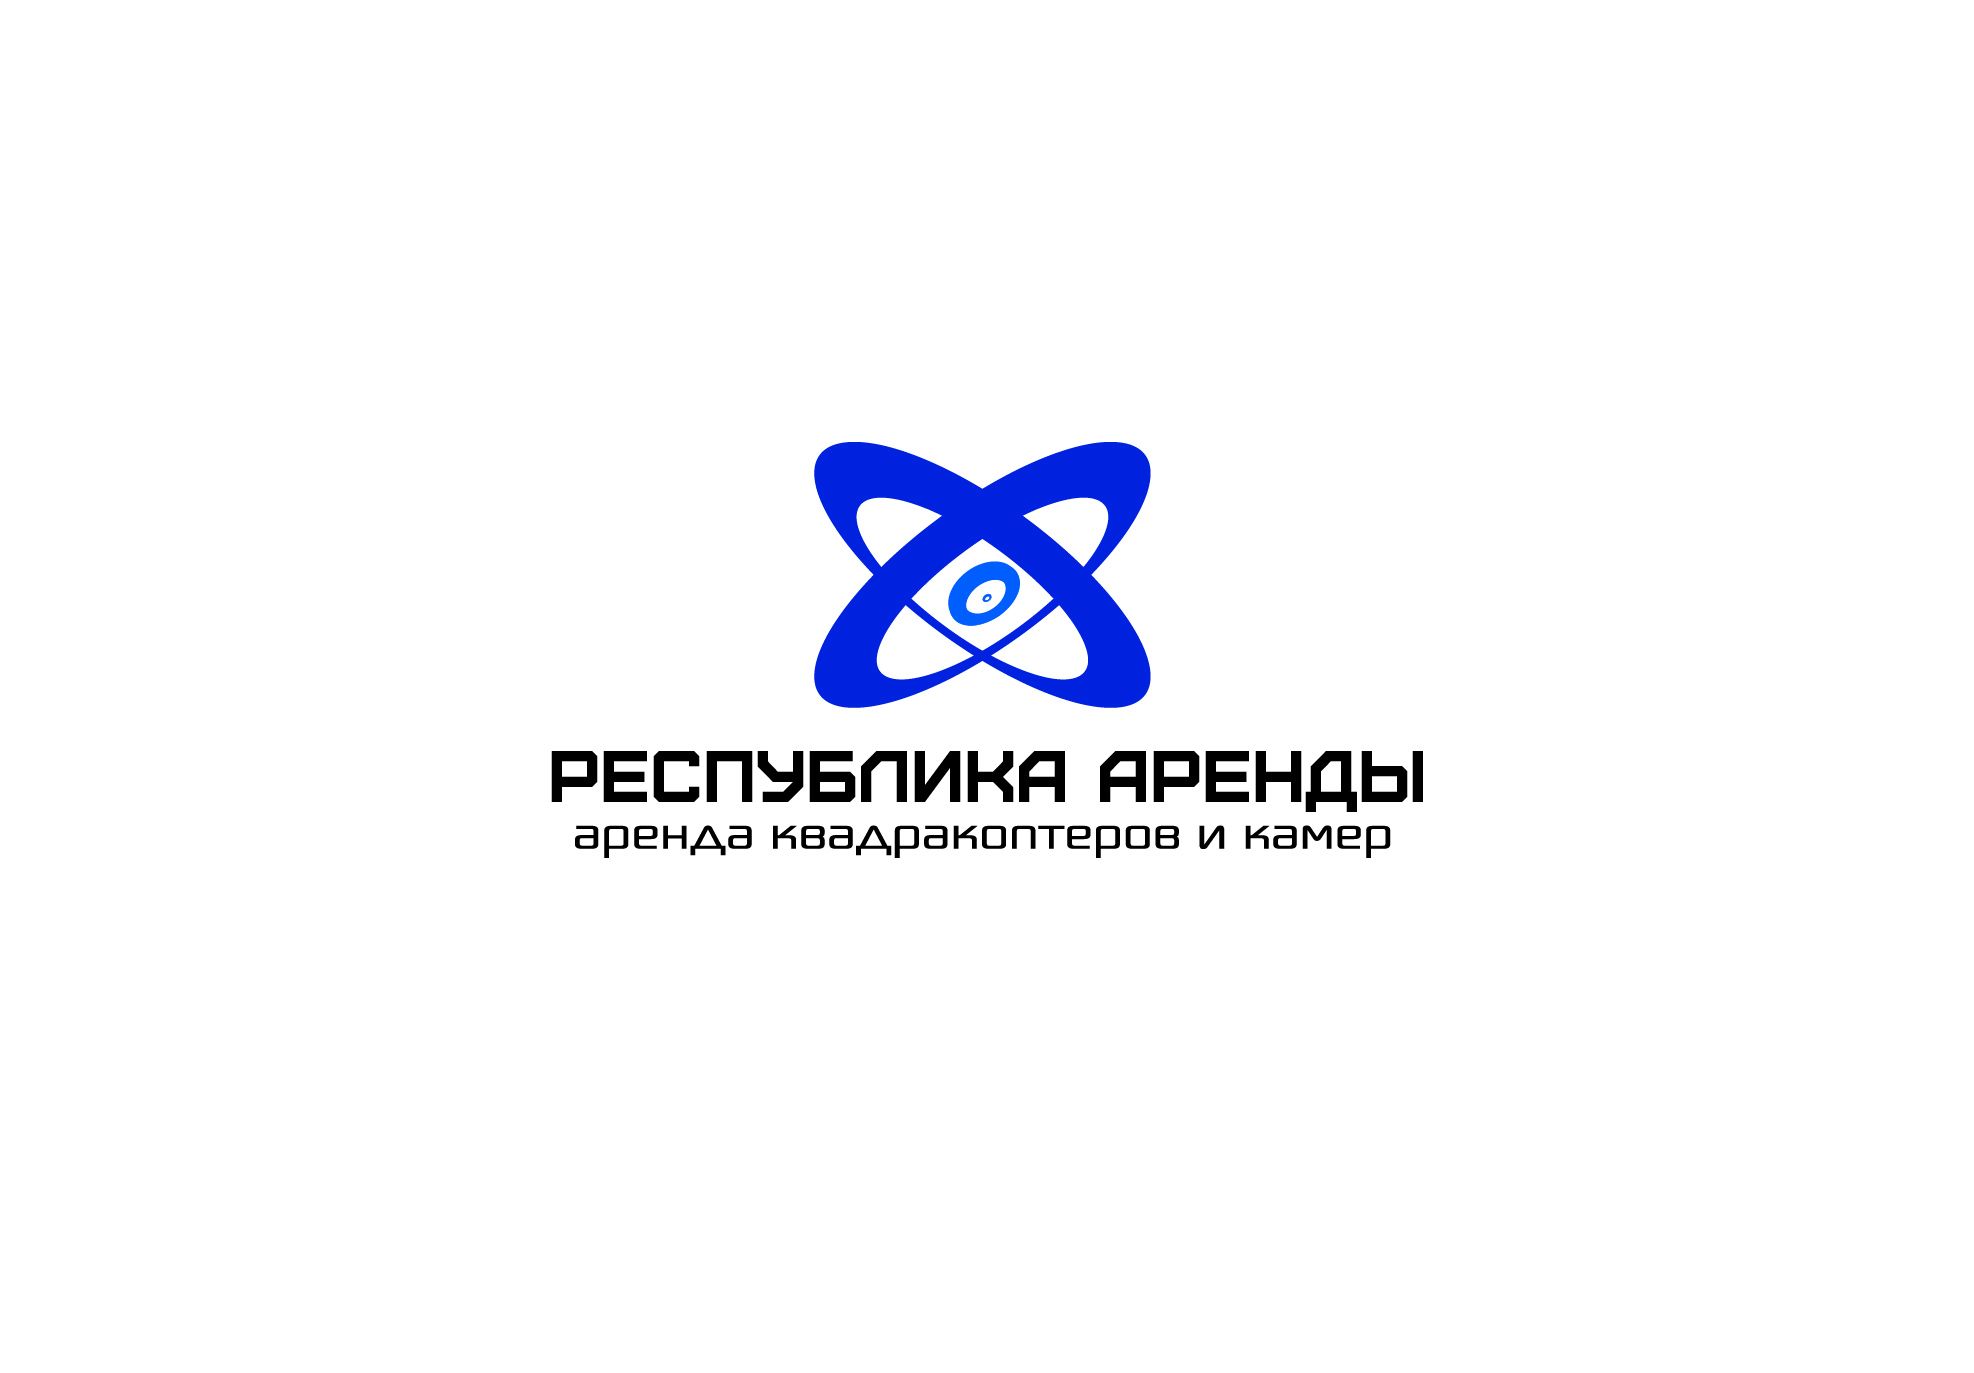 Логотип для компании по аренде квадракоптеров - дизайнер comicdm